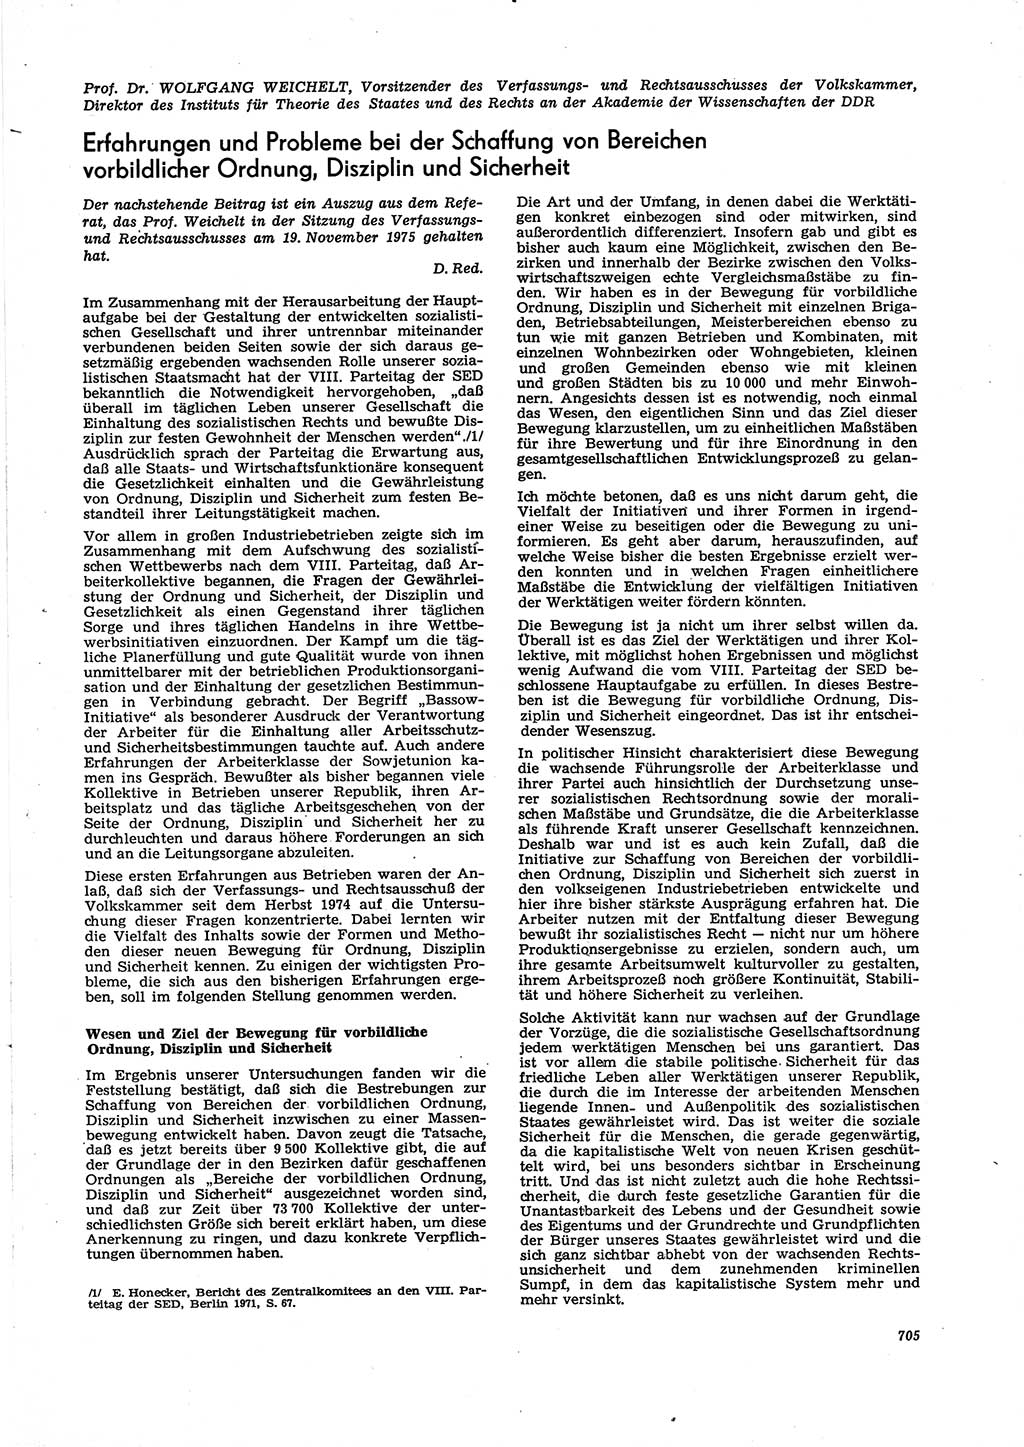 Neue Justiz (NJ), Zeitschrift für Recht und Rechtswissenschaft [Deutsche Demokratische Republik (DDR)], 29. Jahrgang 1975, Seite 705 (NJ DDR 1975, S. 705)